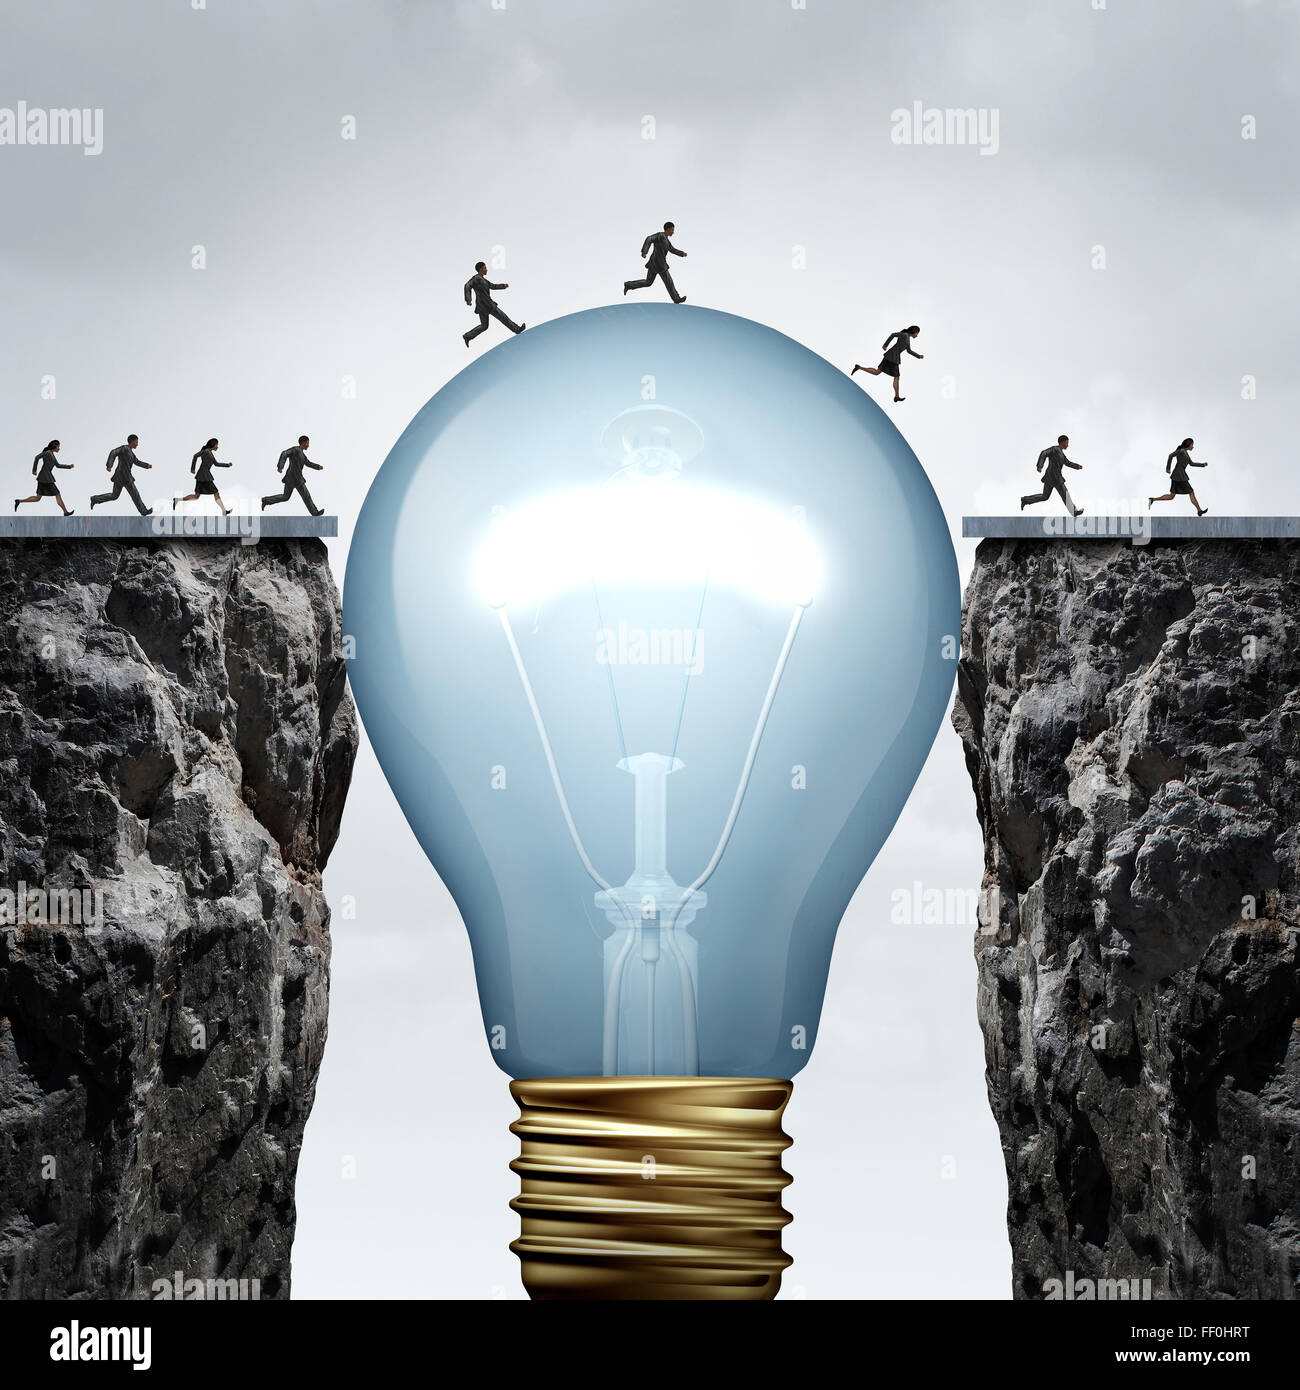 Kreativität-Business-Idee-Lösung als eine Gruppe von Menschen auf zwei gespaltenen Felsen durch eine riesige Glühbirne die Lücke zu schließen und eine Brücke verbunden zu eine Kreuzung zum Erfolg als Metapher ueberstehen denken ermöglichen... Stockfoto